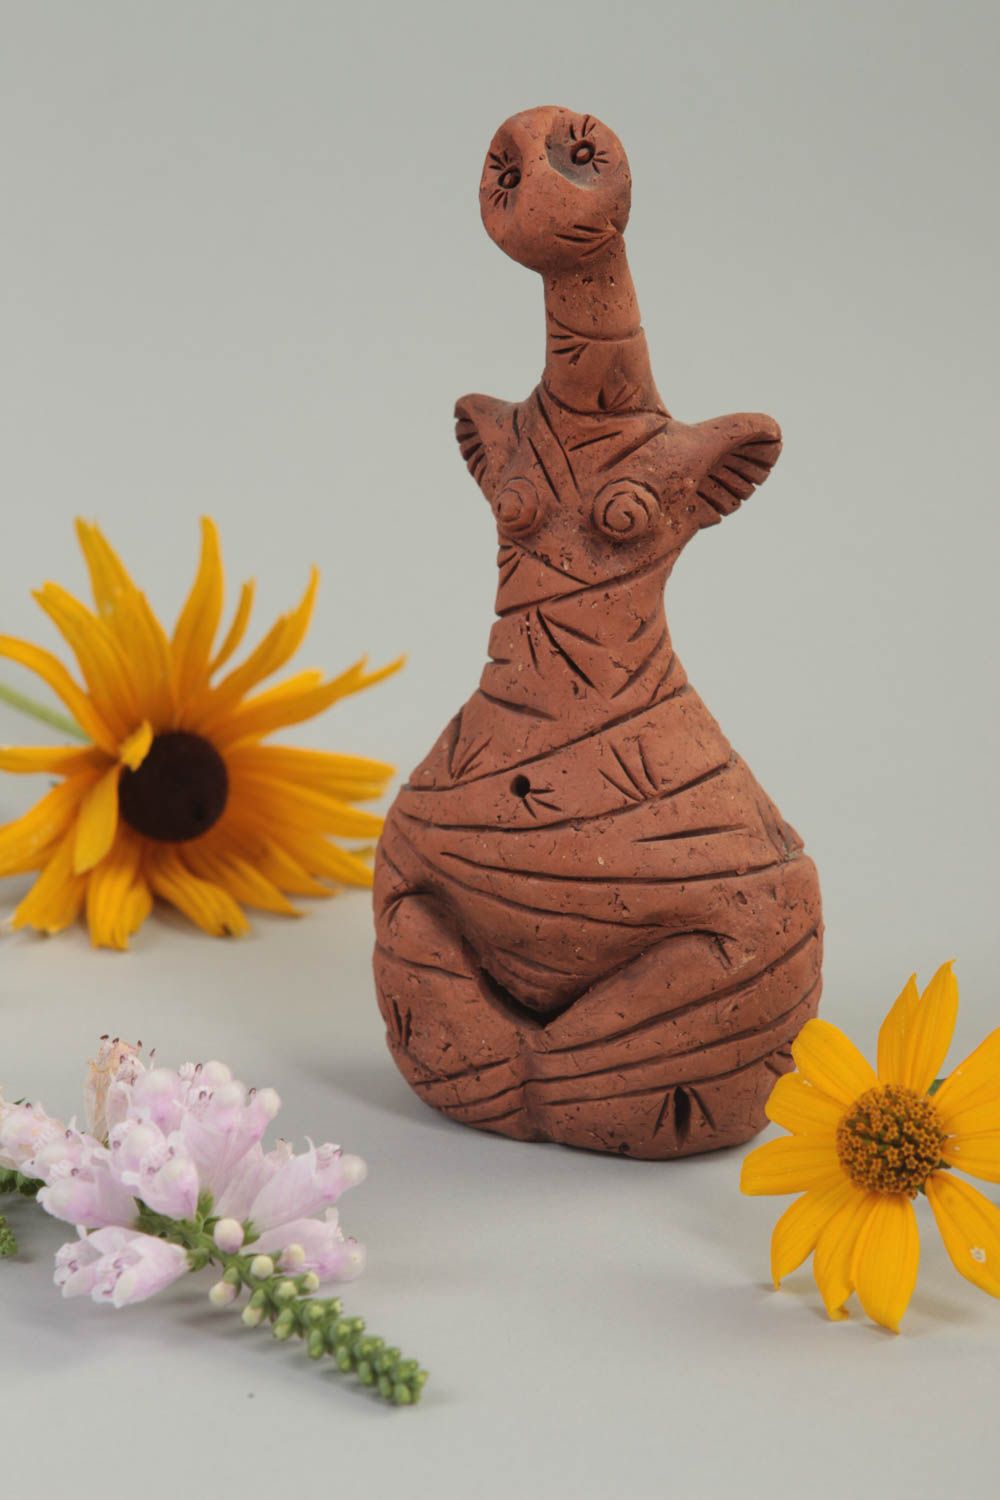 Статуэтка ручной работы глиняная статуэтка декоративная глиняная фигурка Девушка фото 1